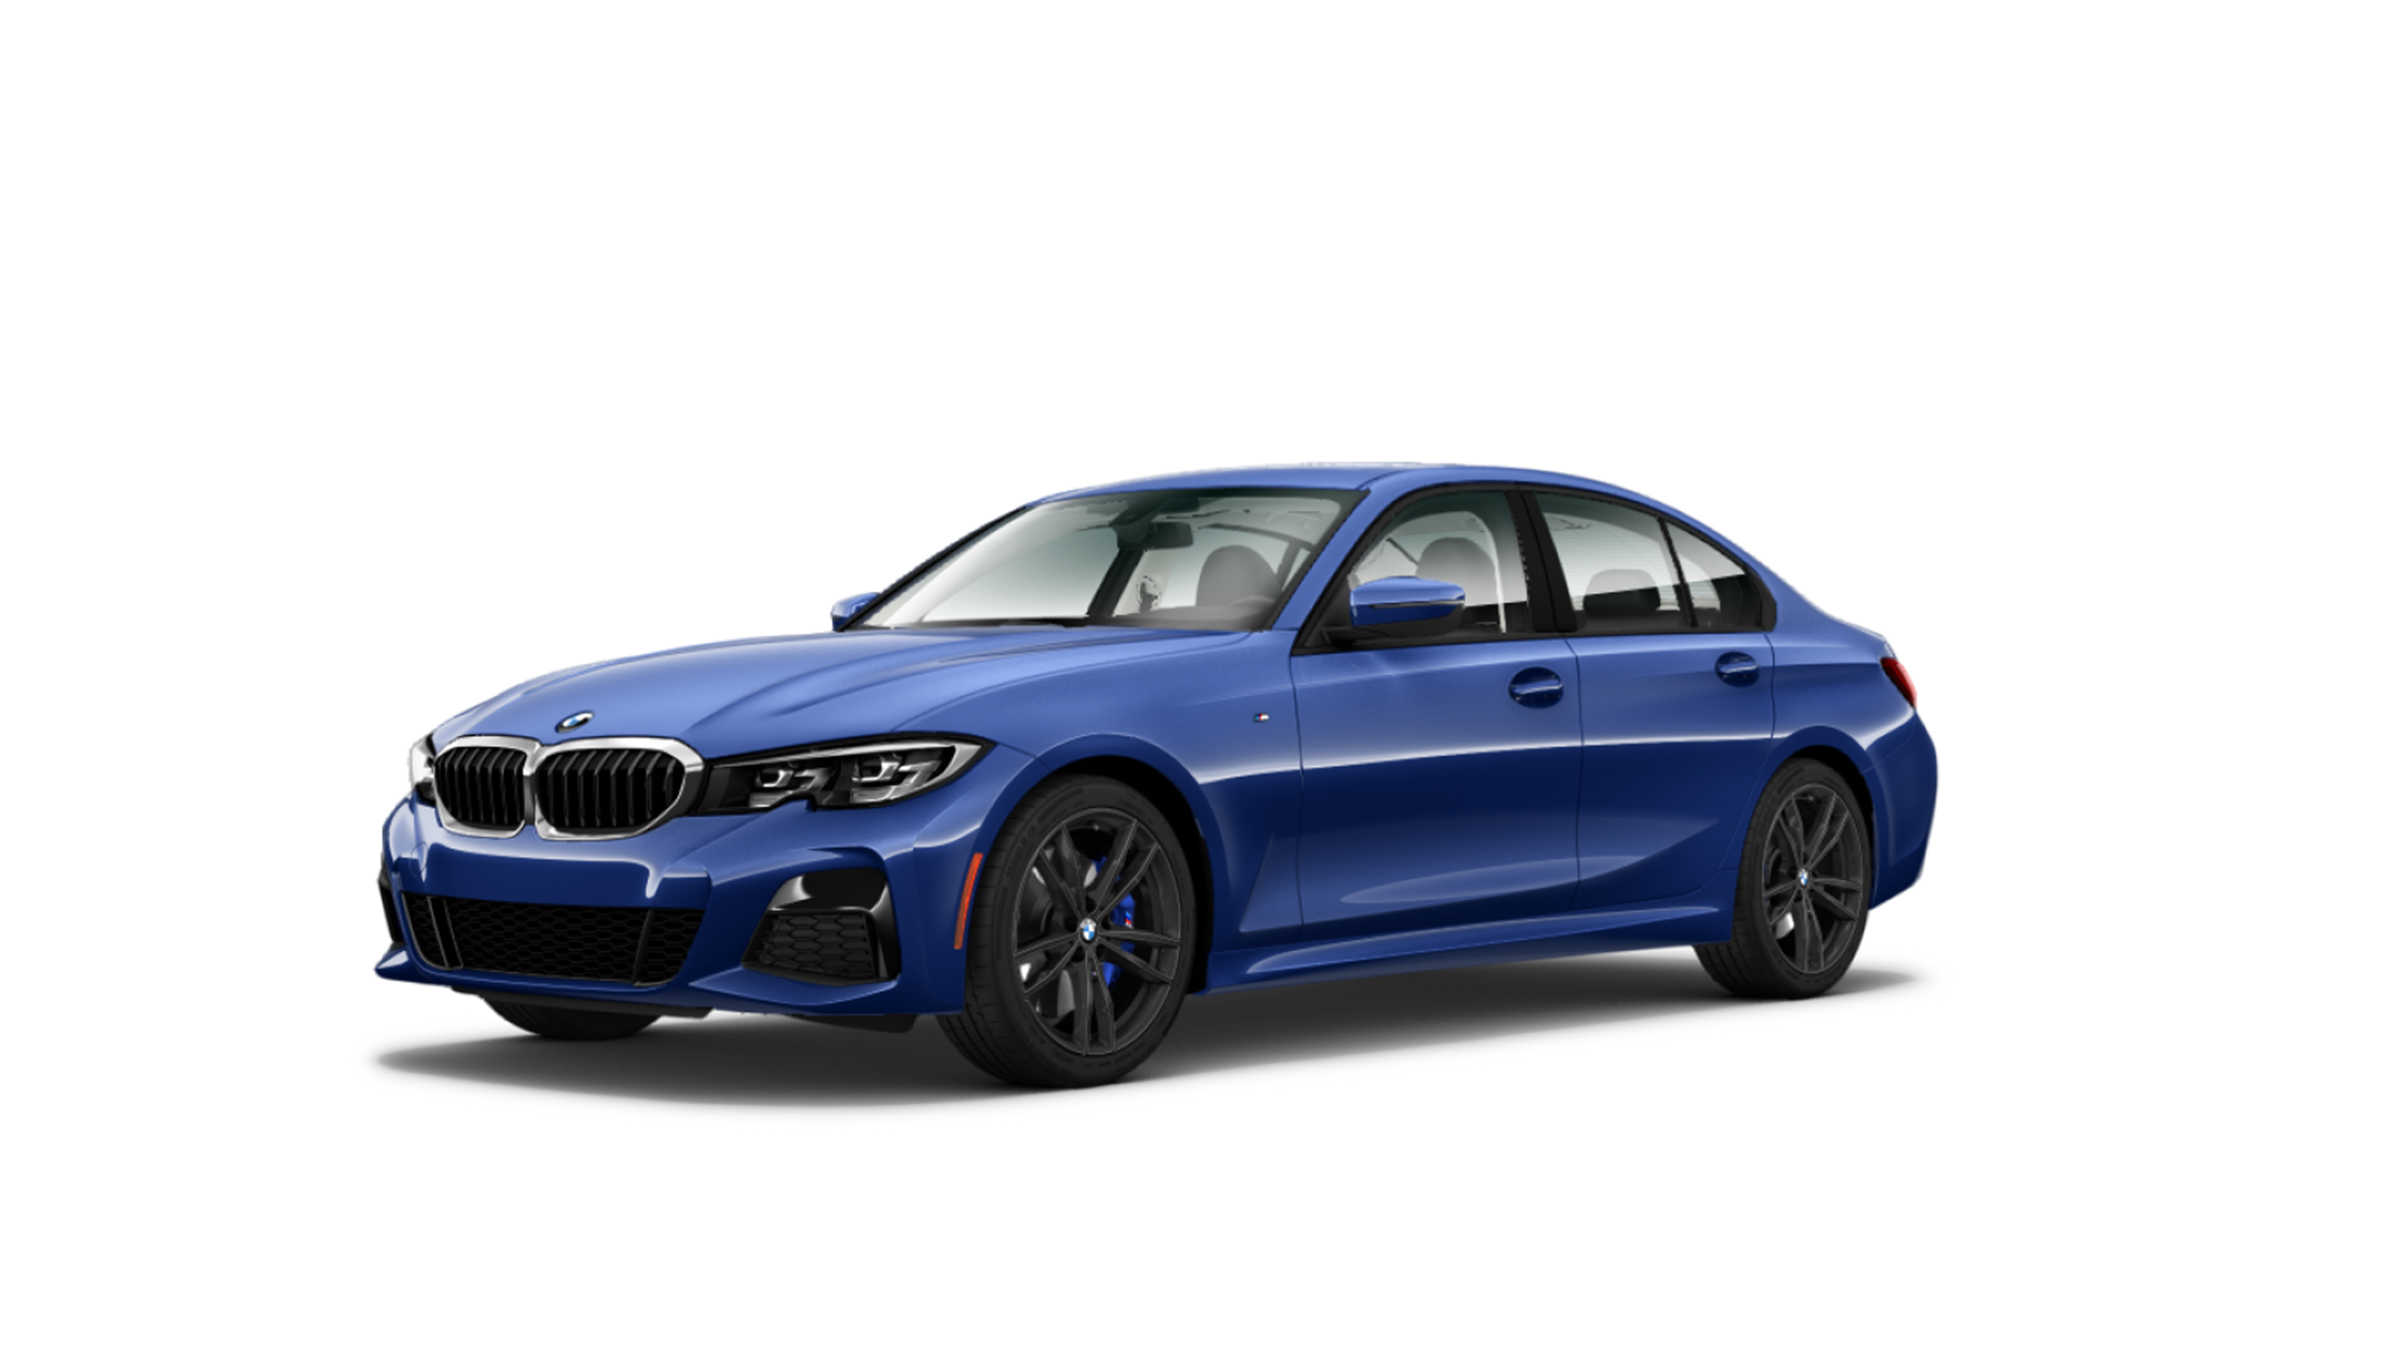 Oto nowe BMW serii 3 G20. Mamy oficjalne zdjęcia. Na razie